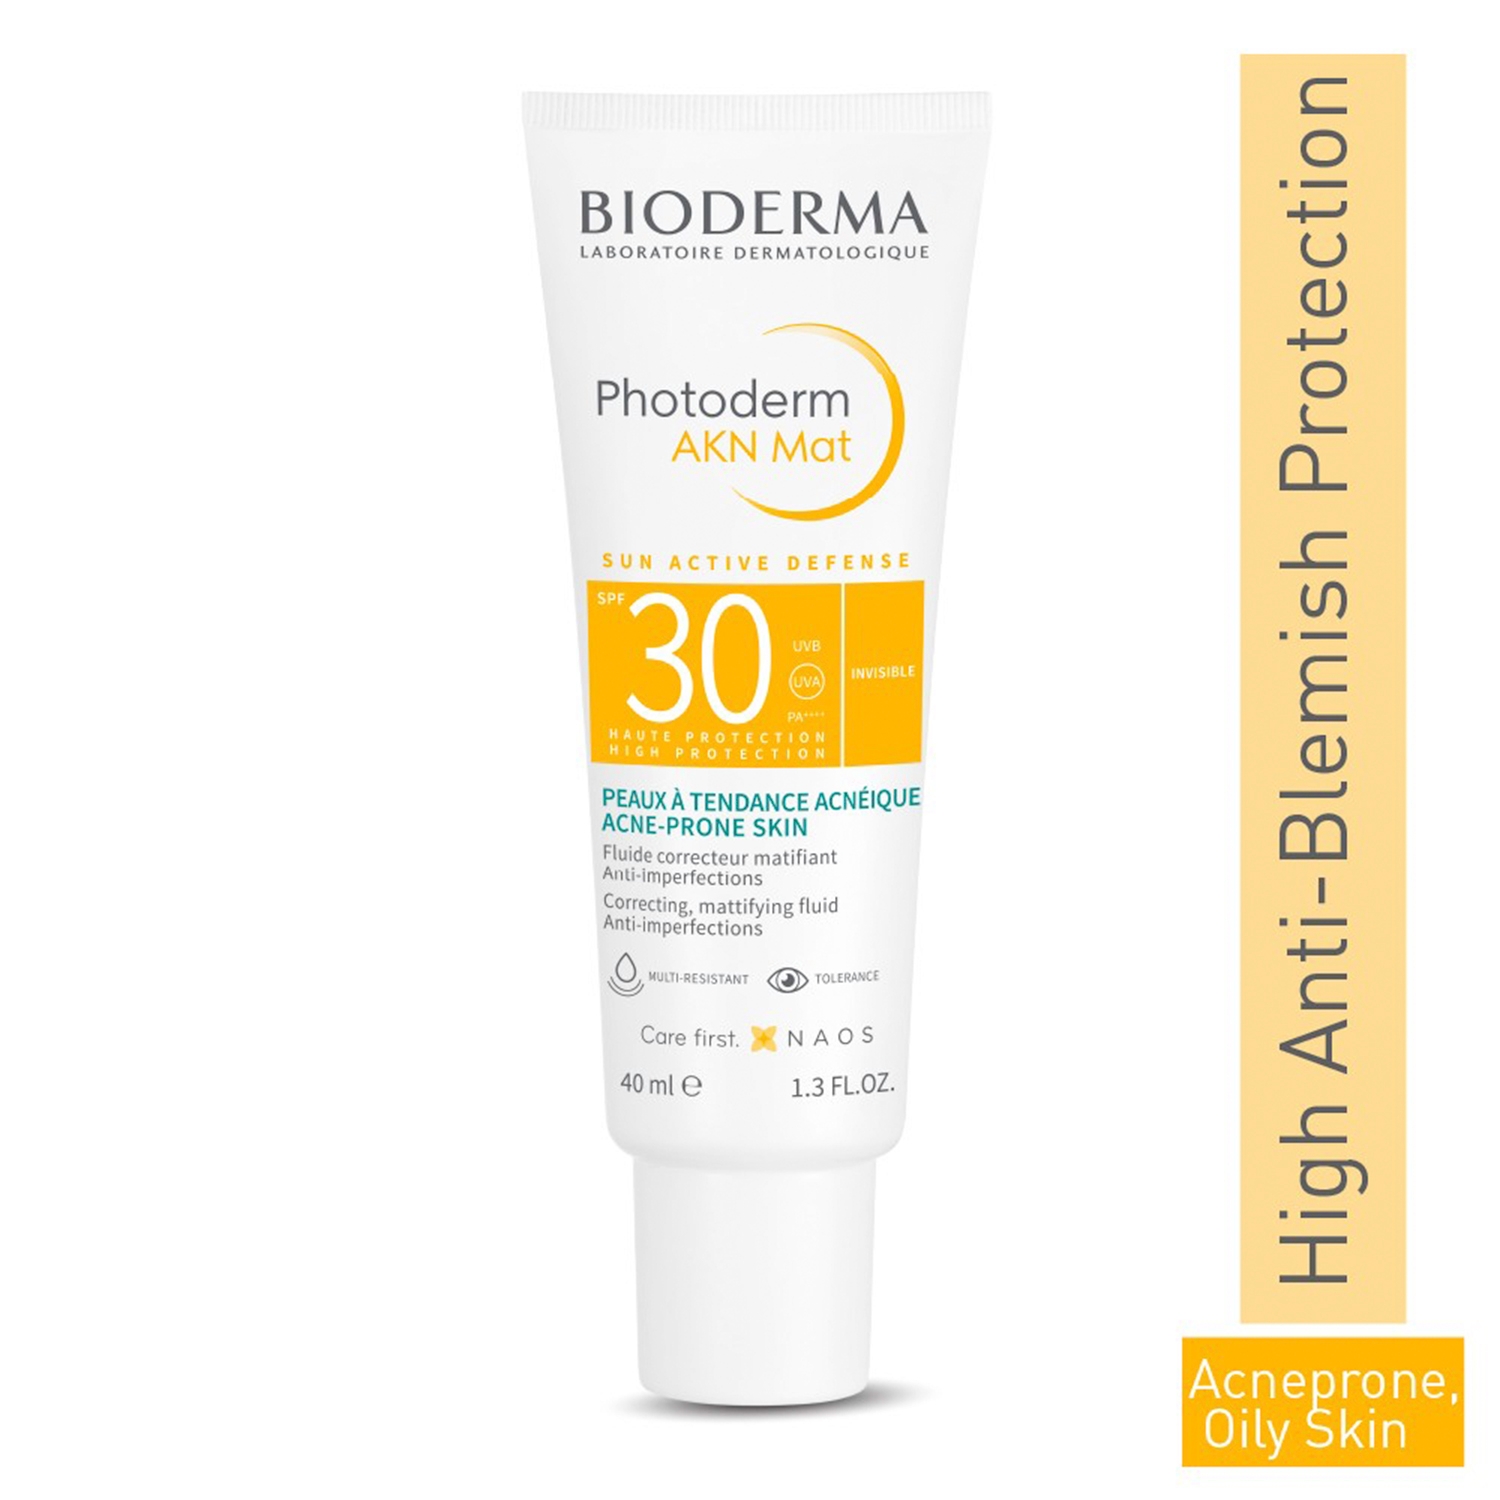 Bioderma | Bioderma Photoderm Akn Mat Sunscreen SPF 30 (40ml)